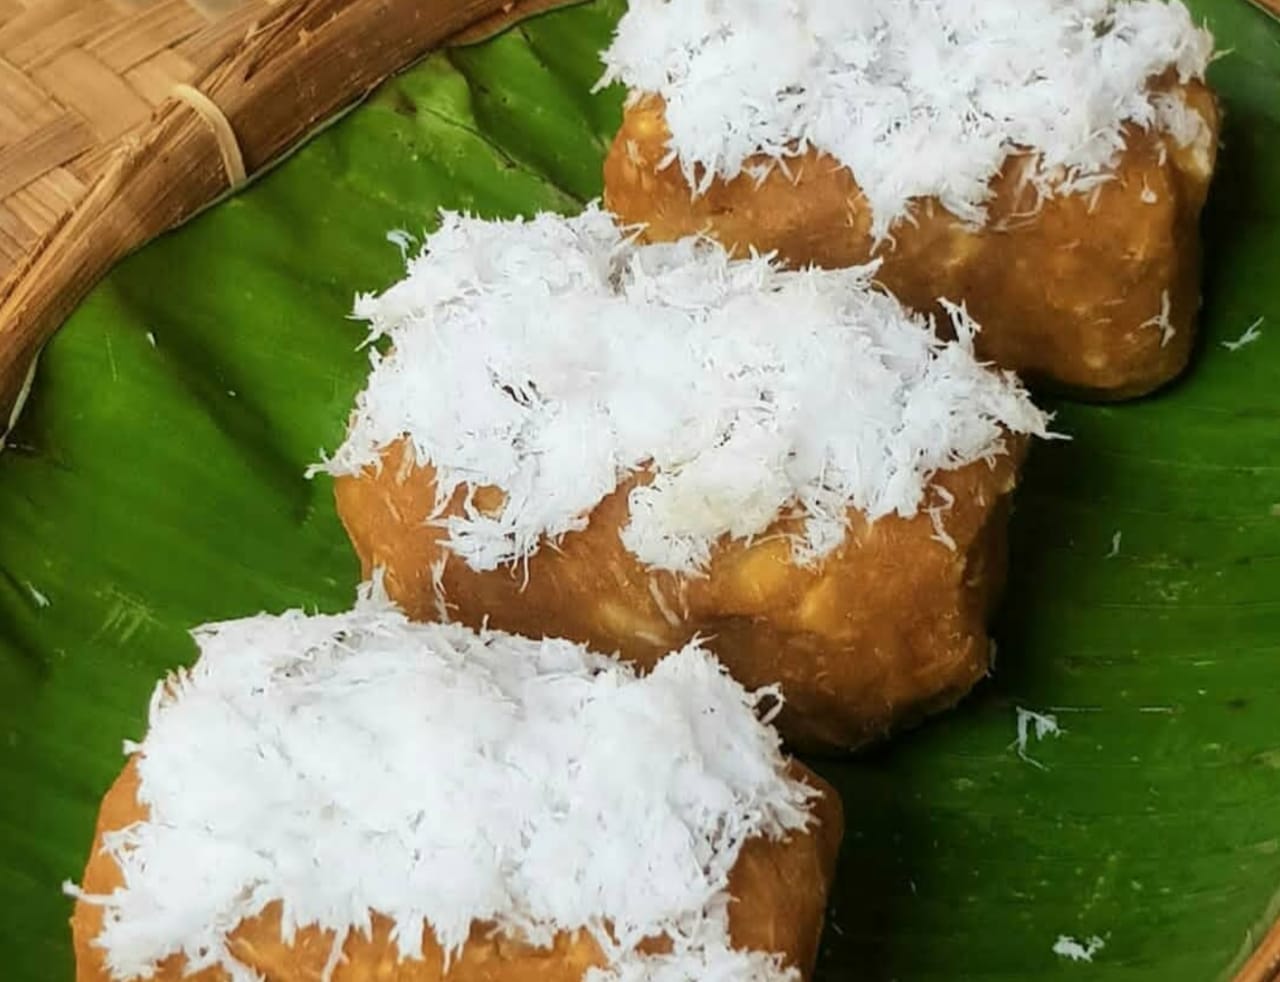 Resep Getuk Gurih Ditambah Taburan Parudan Kelapa, Kue Tradisional Indonesia yang Mudah Dibuat di Rumah